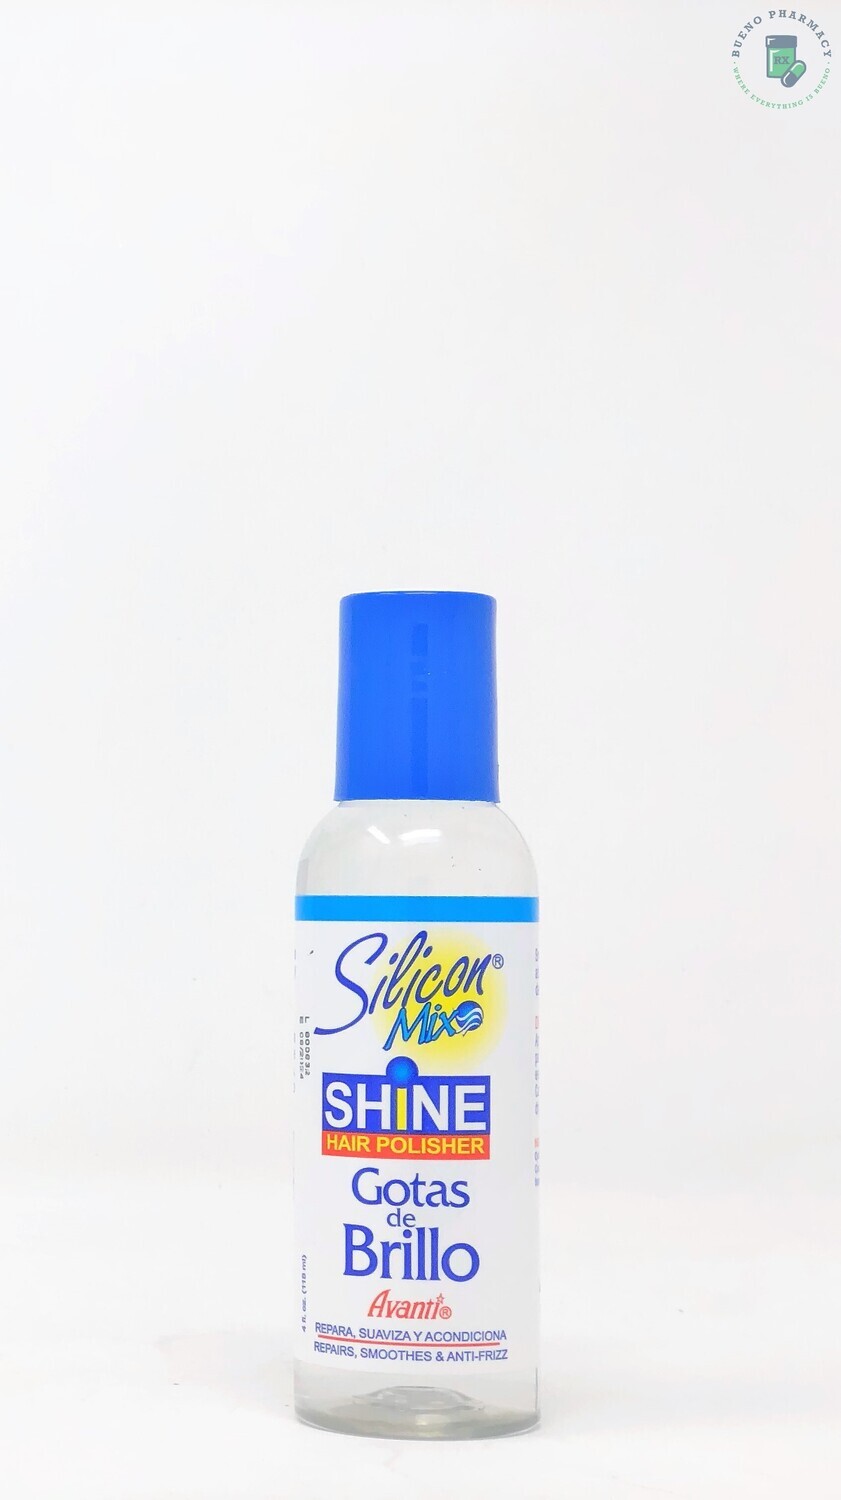 Silicon Mix Shine Hair Polisher Gotas de Brillo